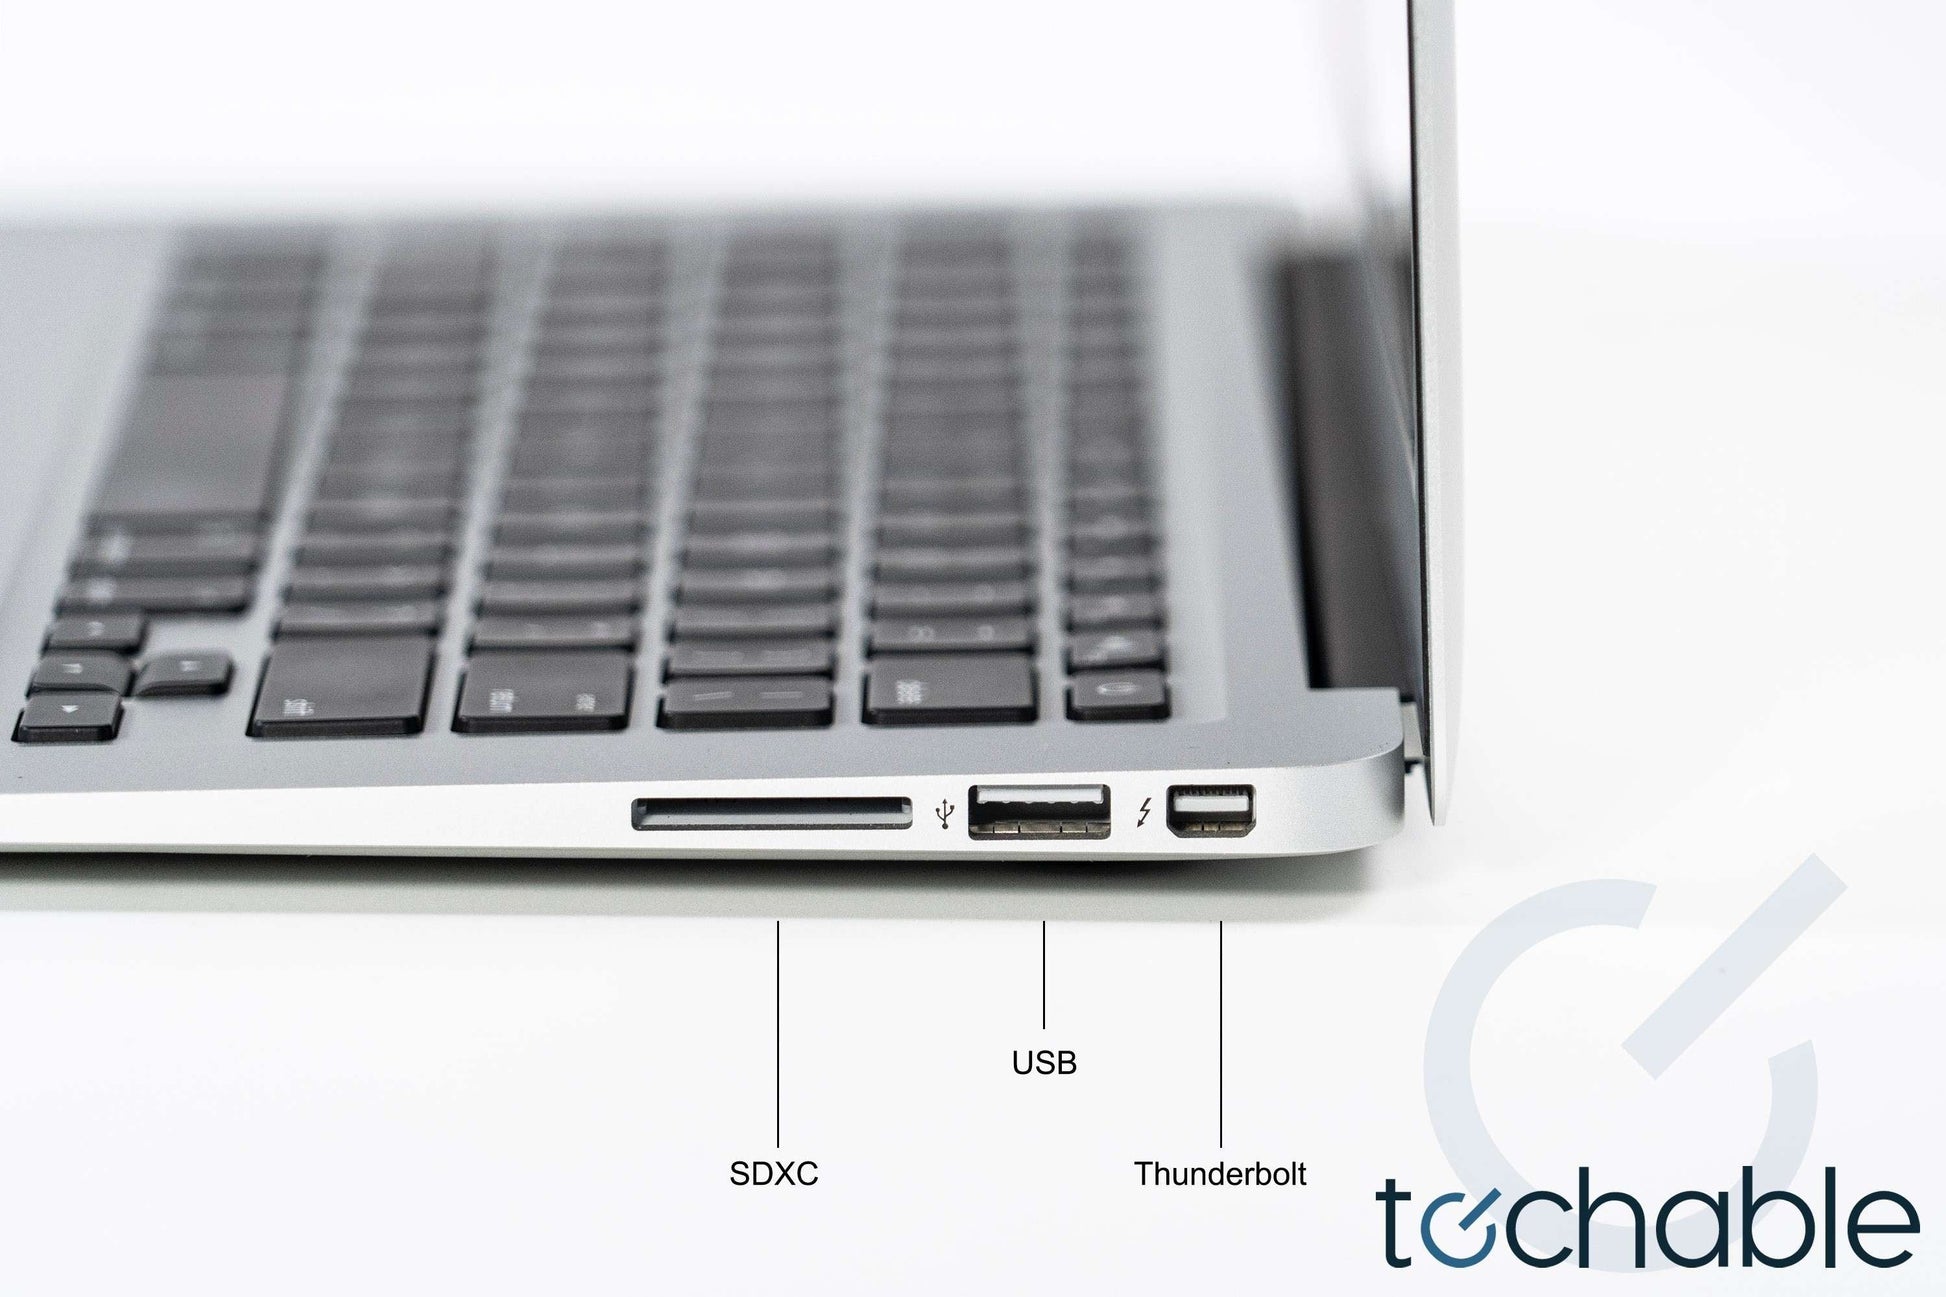 Apple MacBook Air 11-Inch (2015) Core i5 1.6GHz 4GB  A1465 - MJVM2LL/A